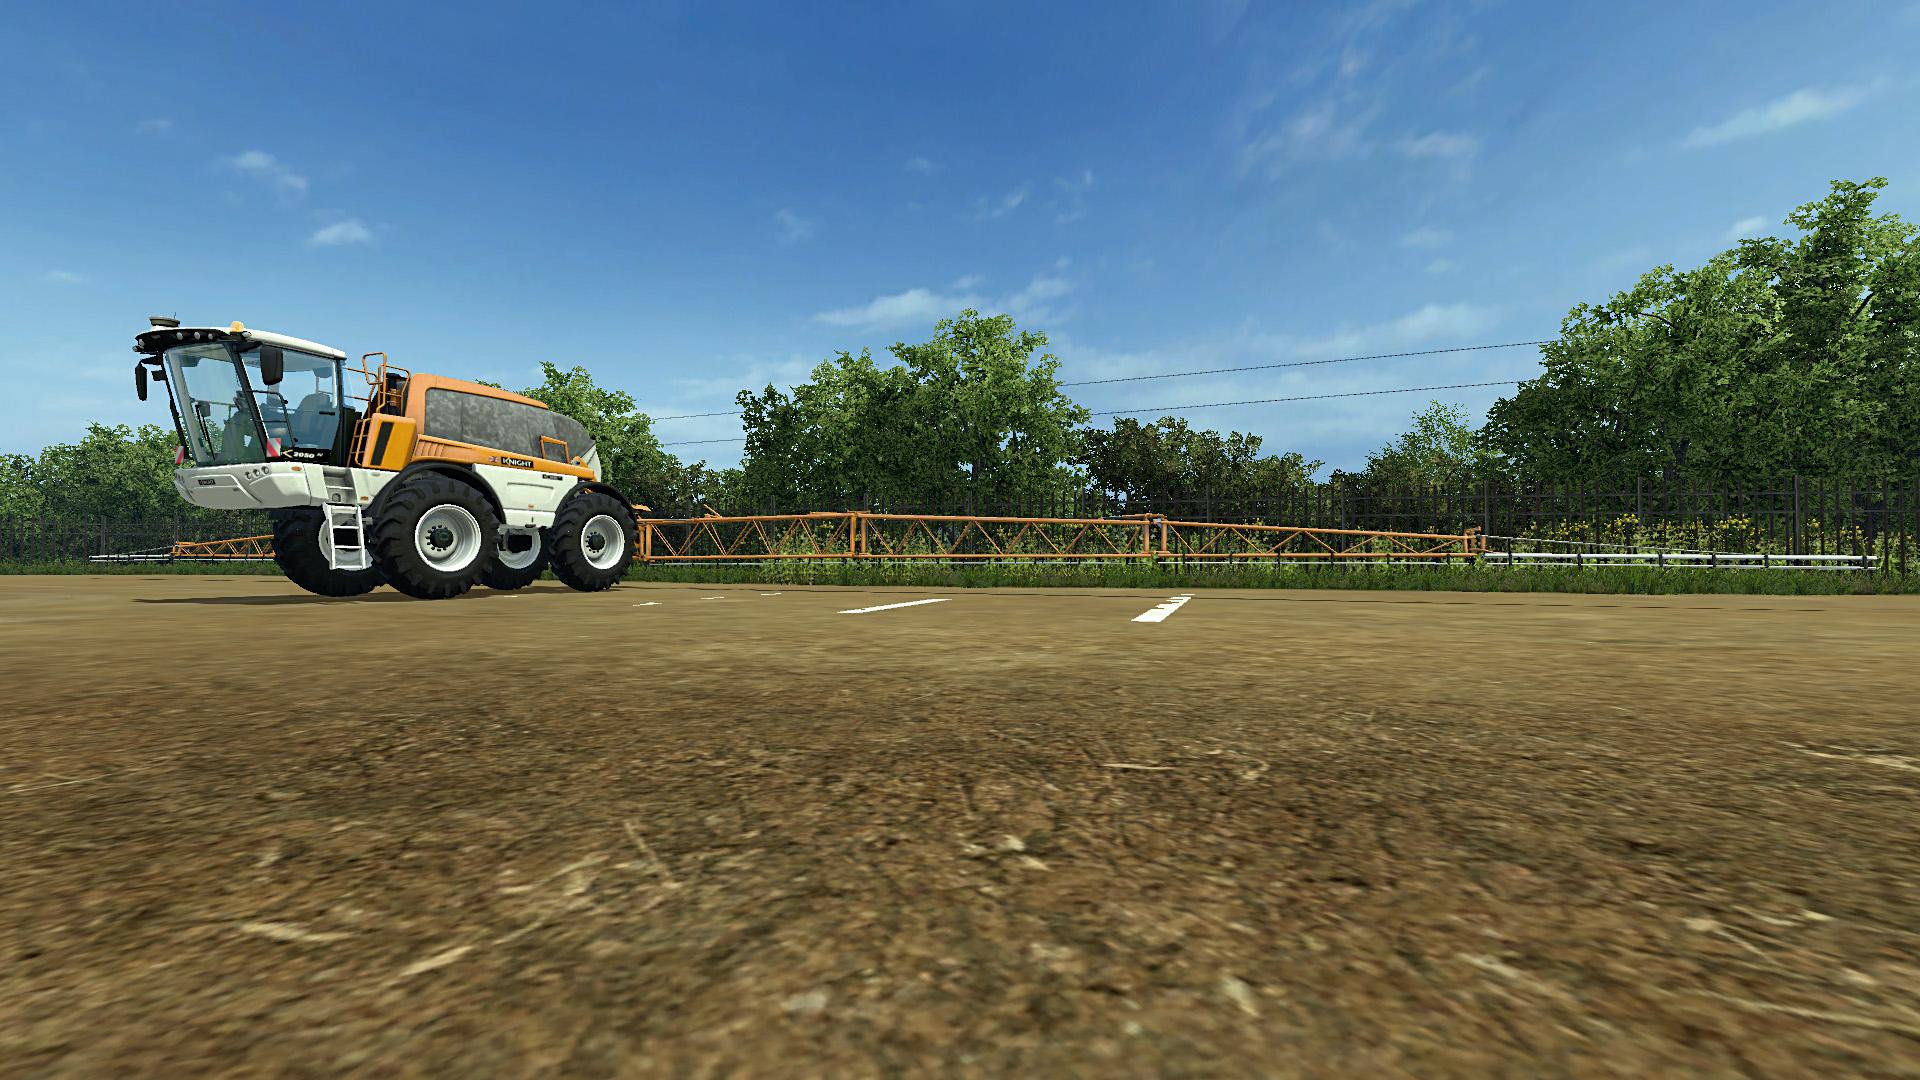 Knight 2050 Vista V20 • Farming Simulator 19 17 22 Mods Fs19 17 22 Mods 5081